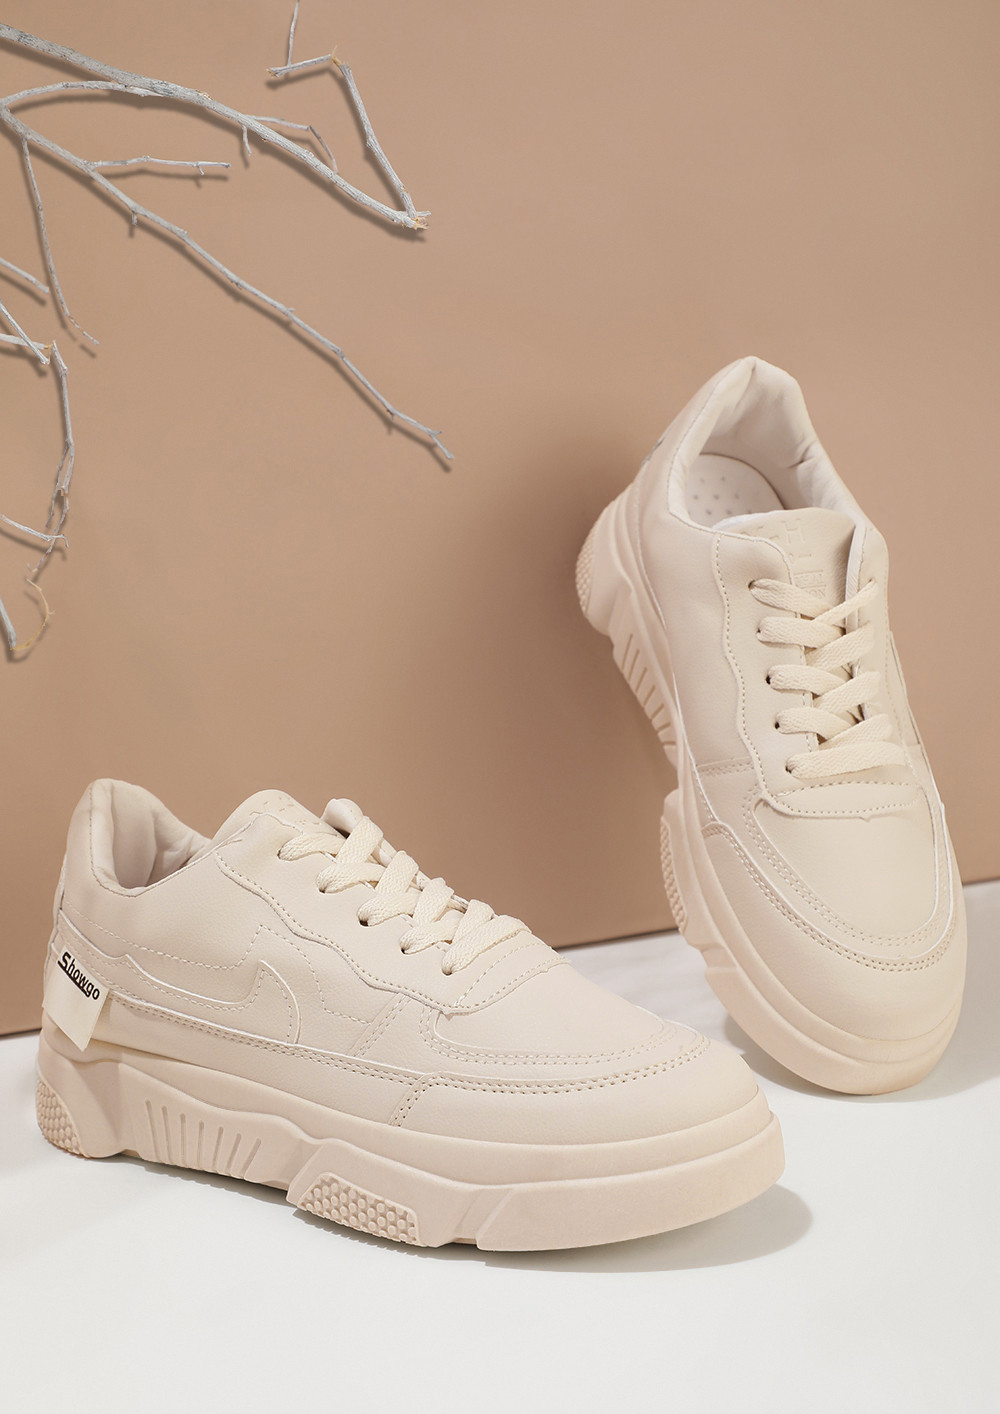 Espadrille Sneakers - Beige - Ladies | H&M US